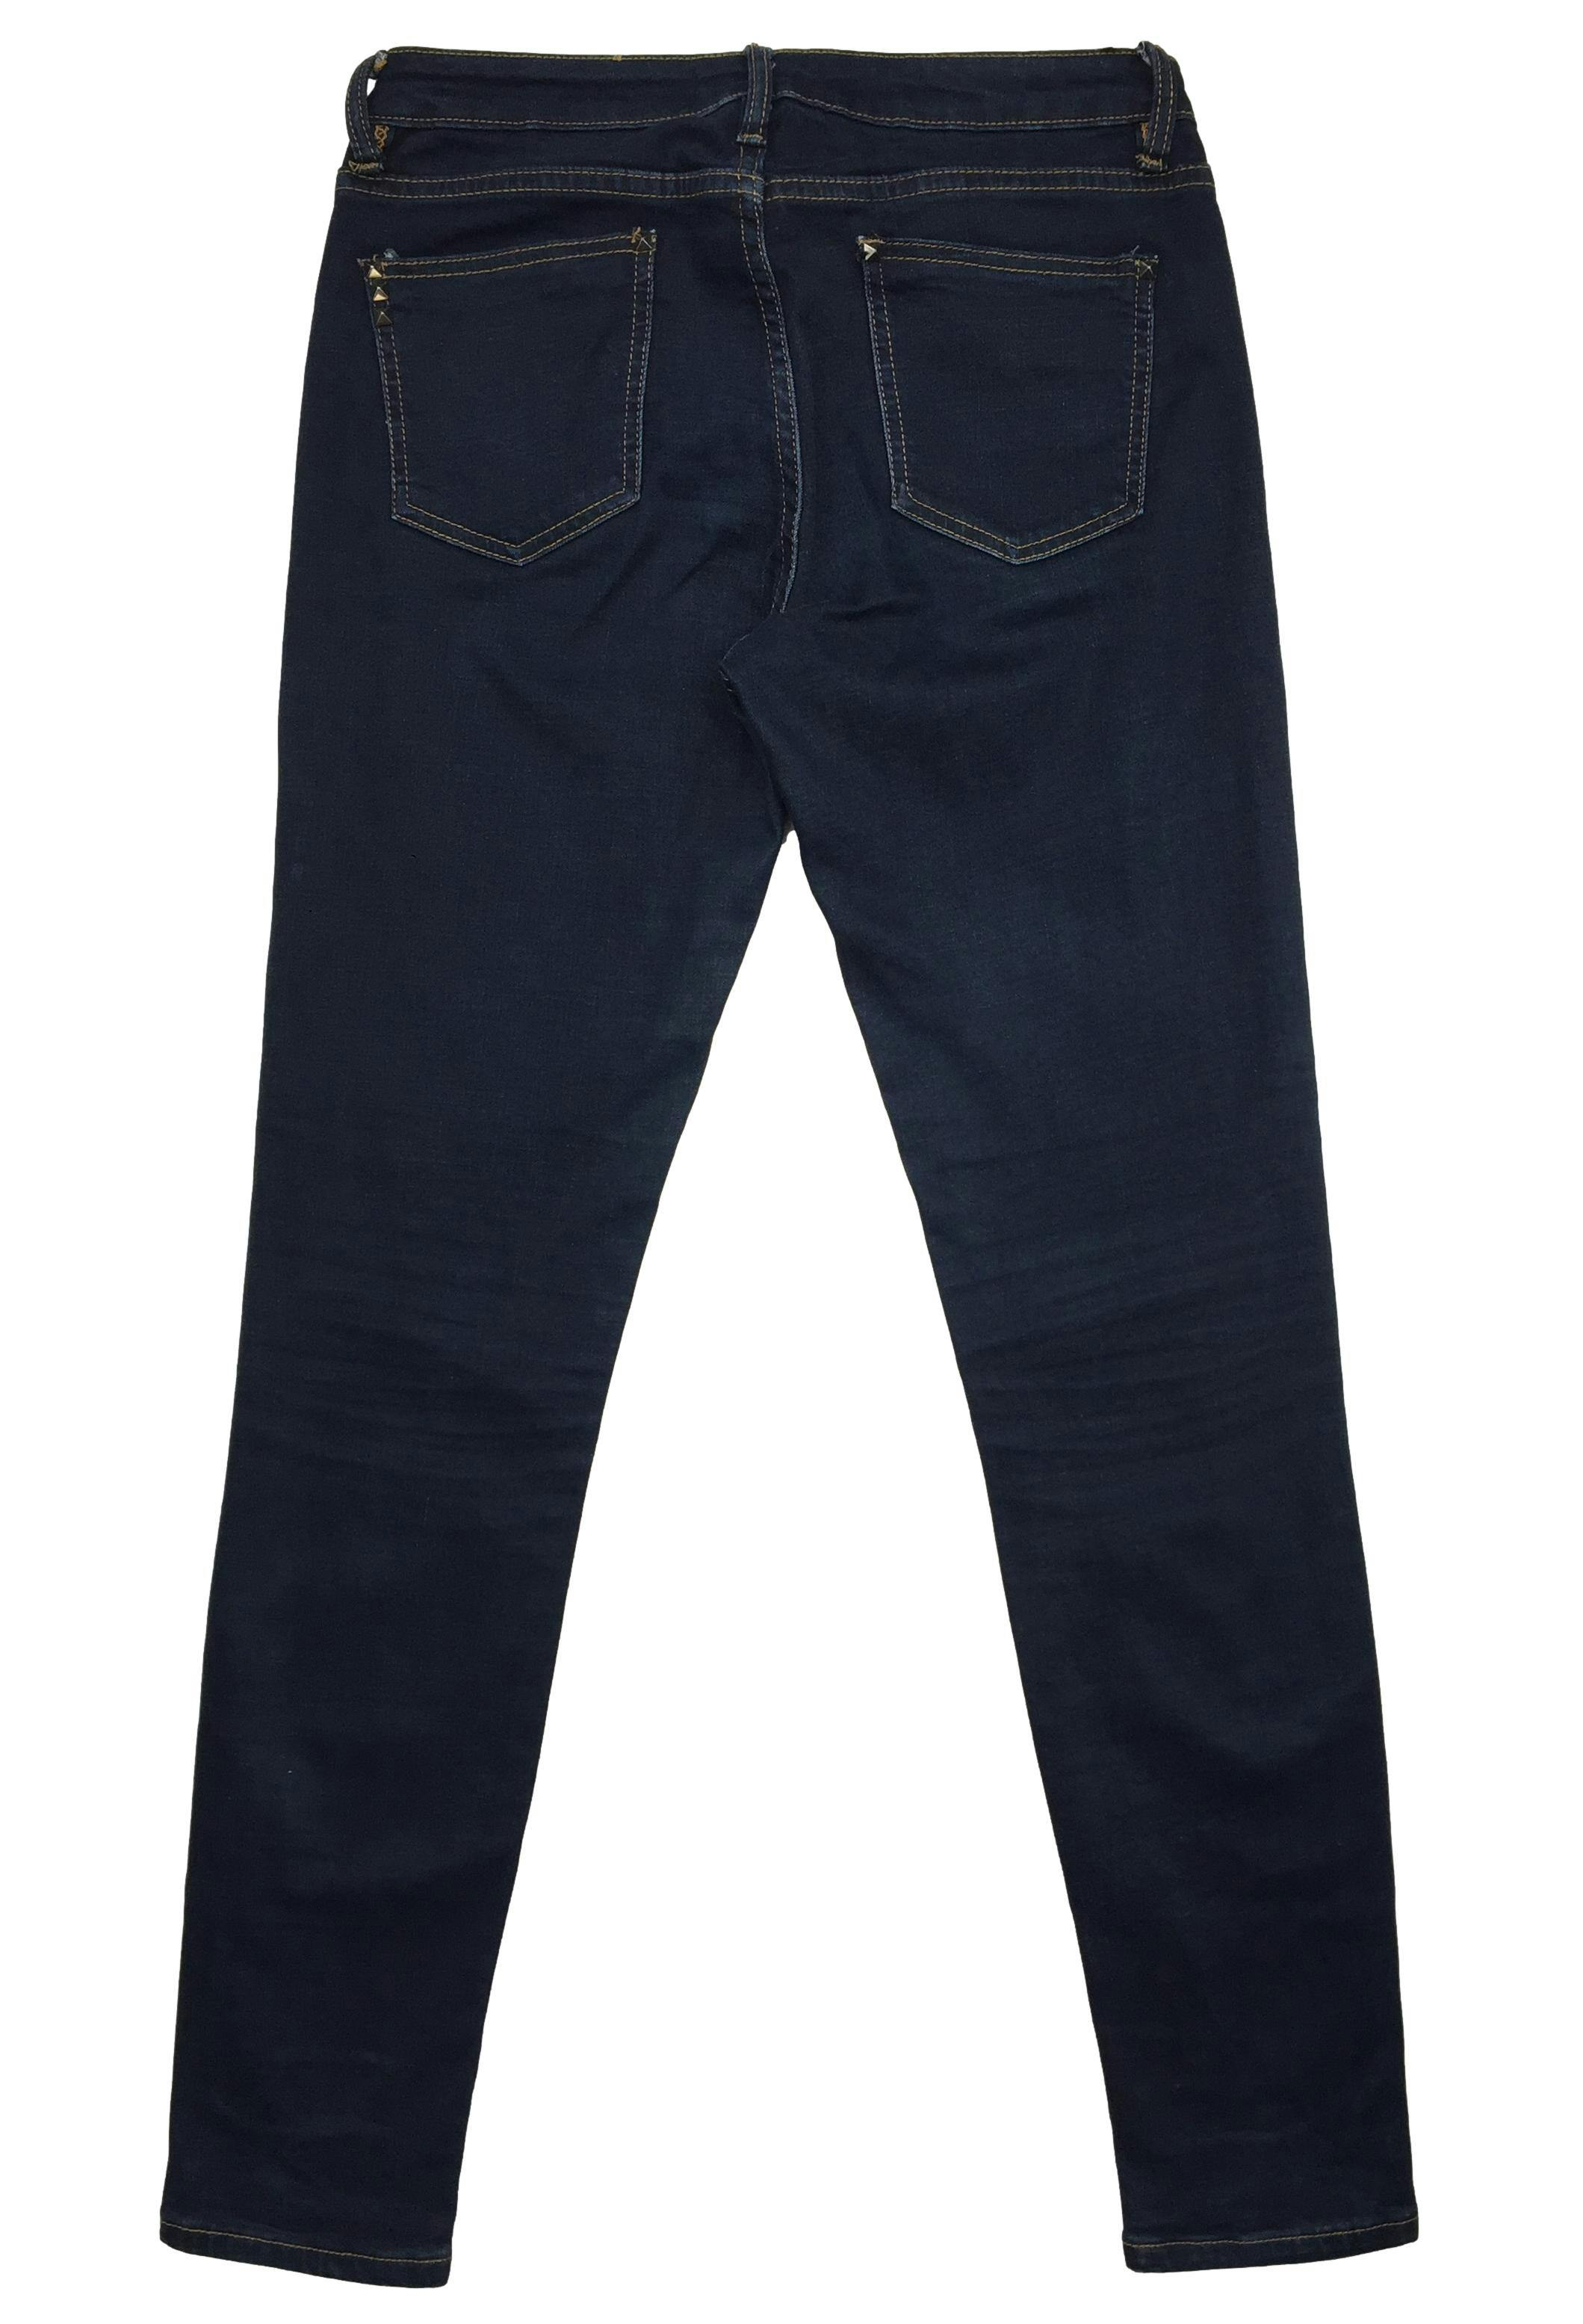 Pantalón jean Now azul stretch con detalles de tachas en los bolsillos. Cintura 80cm, Tiro 23cm, Largo 99cm